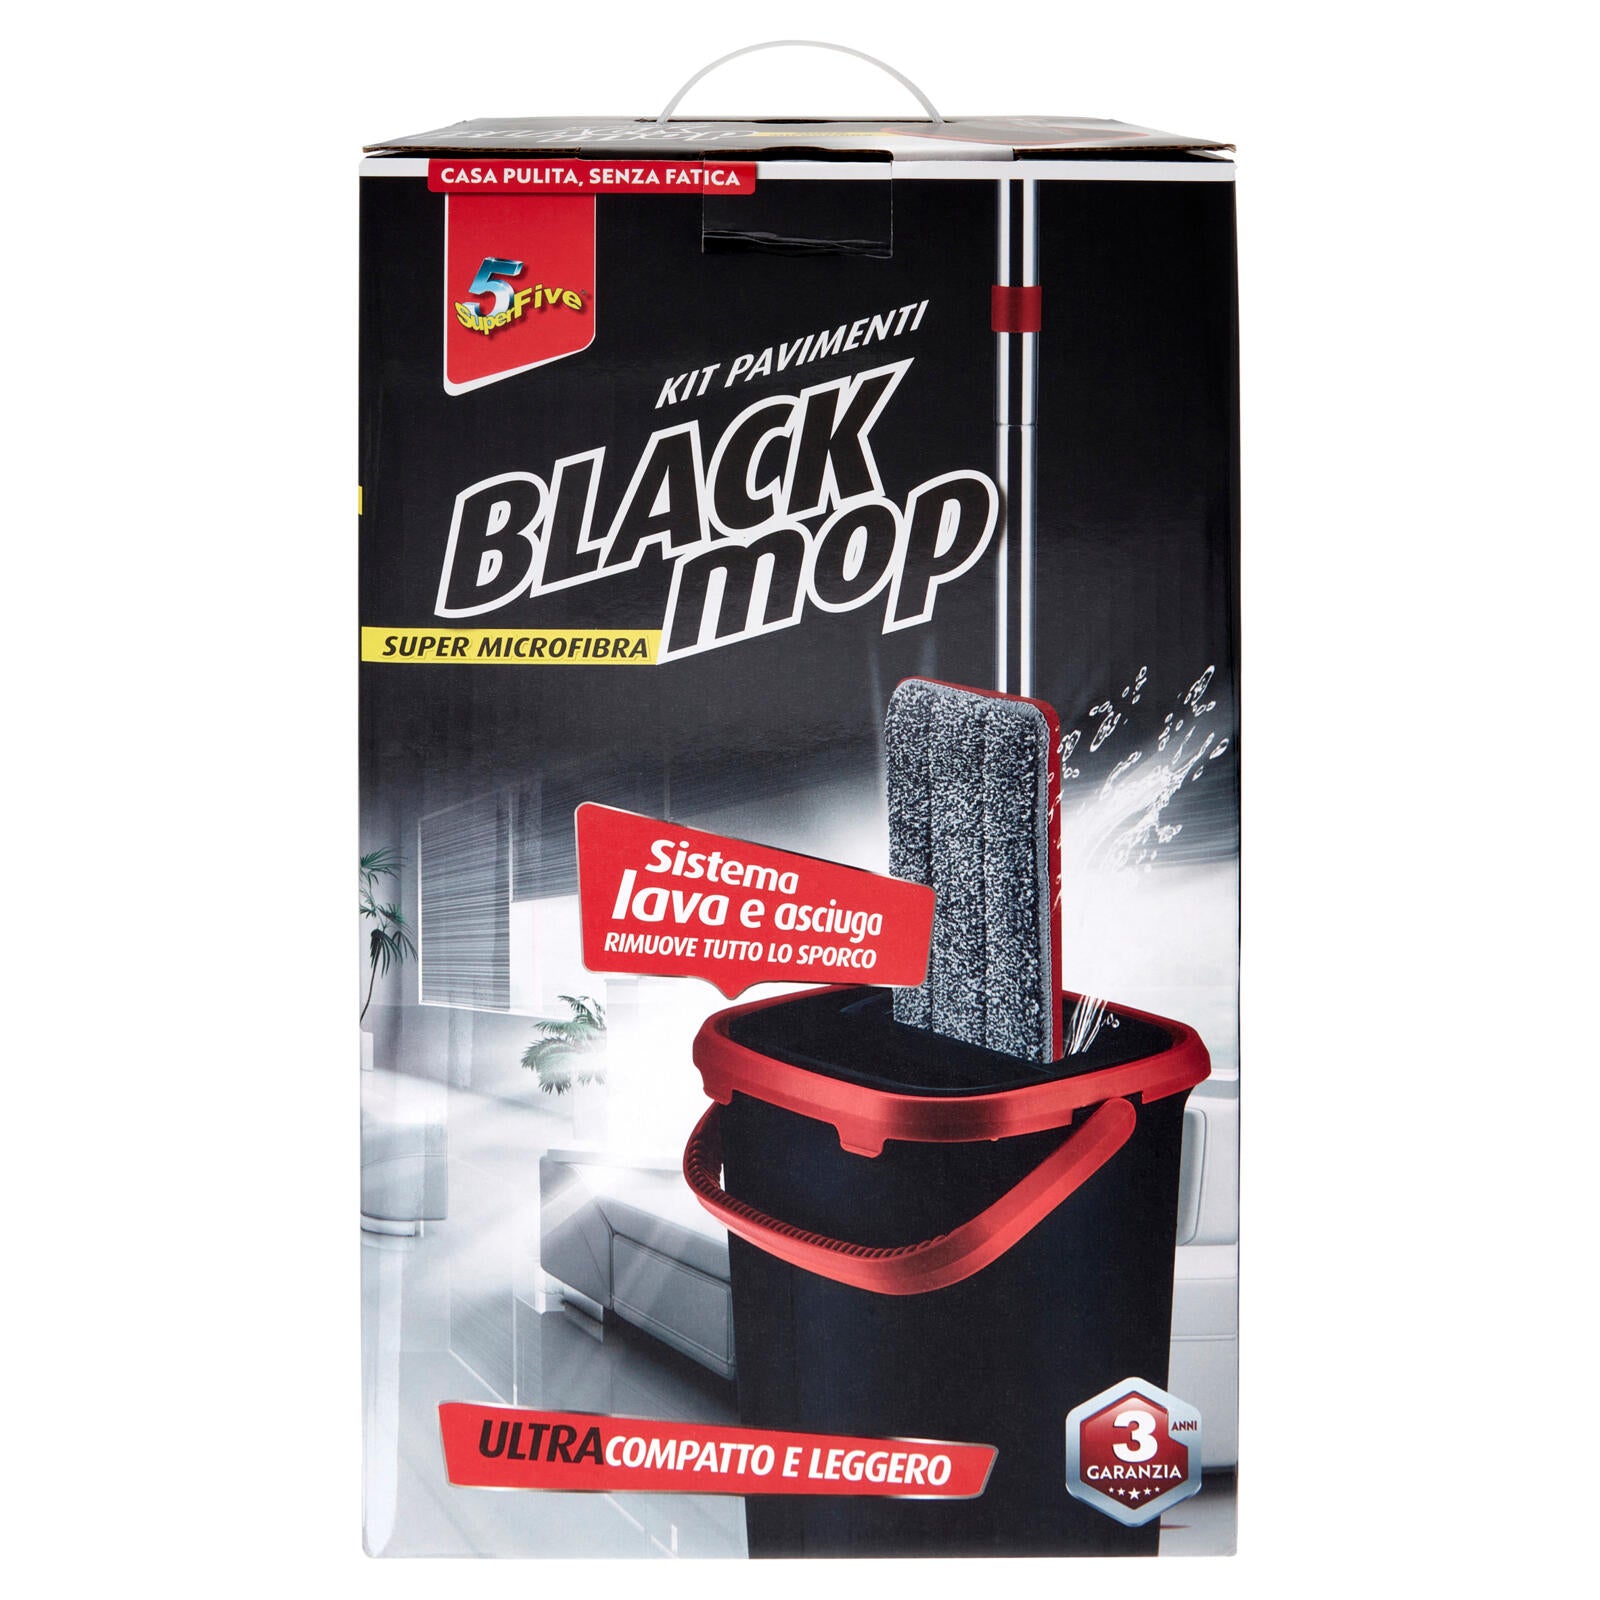 Super5 Black mop Kit Pavimenti